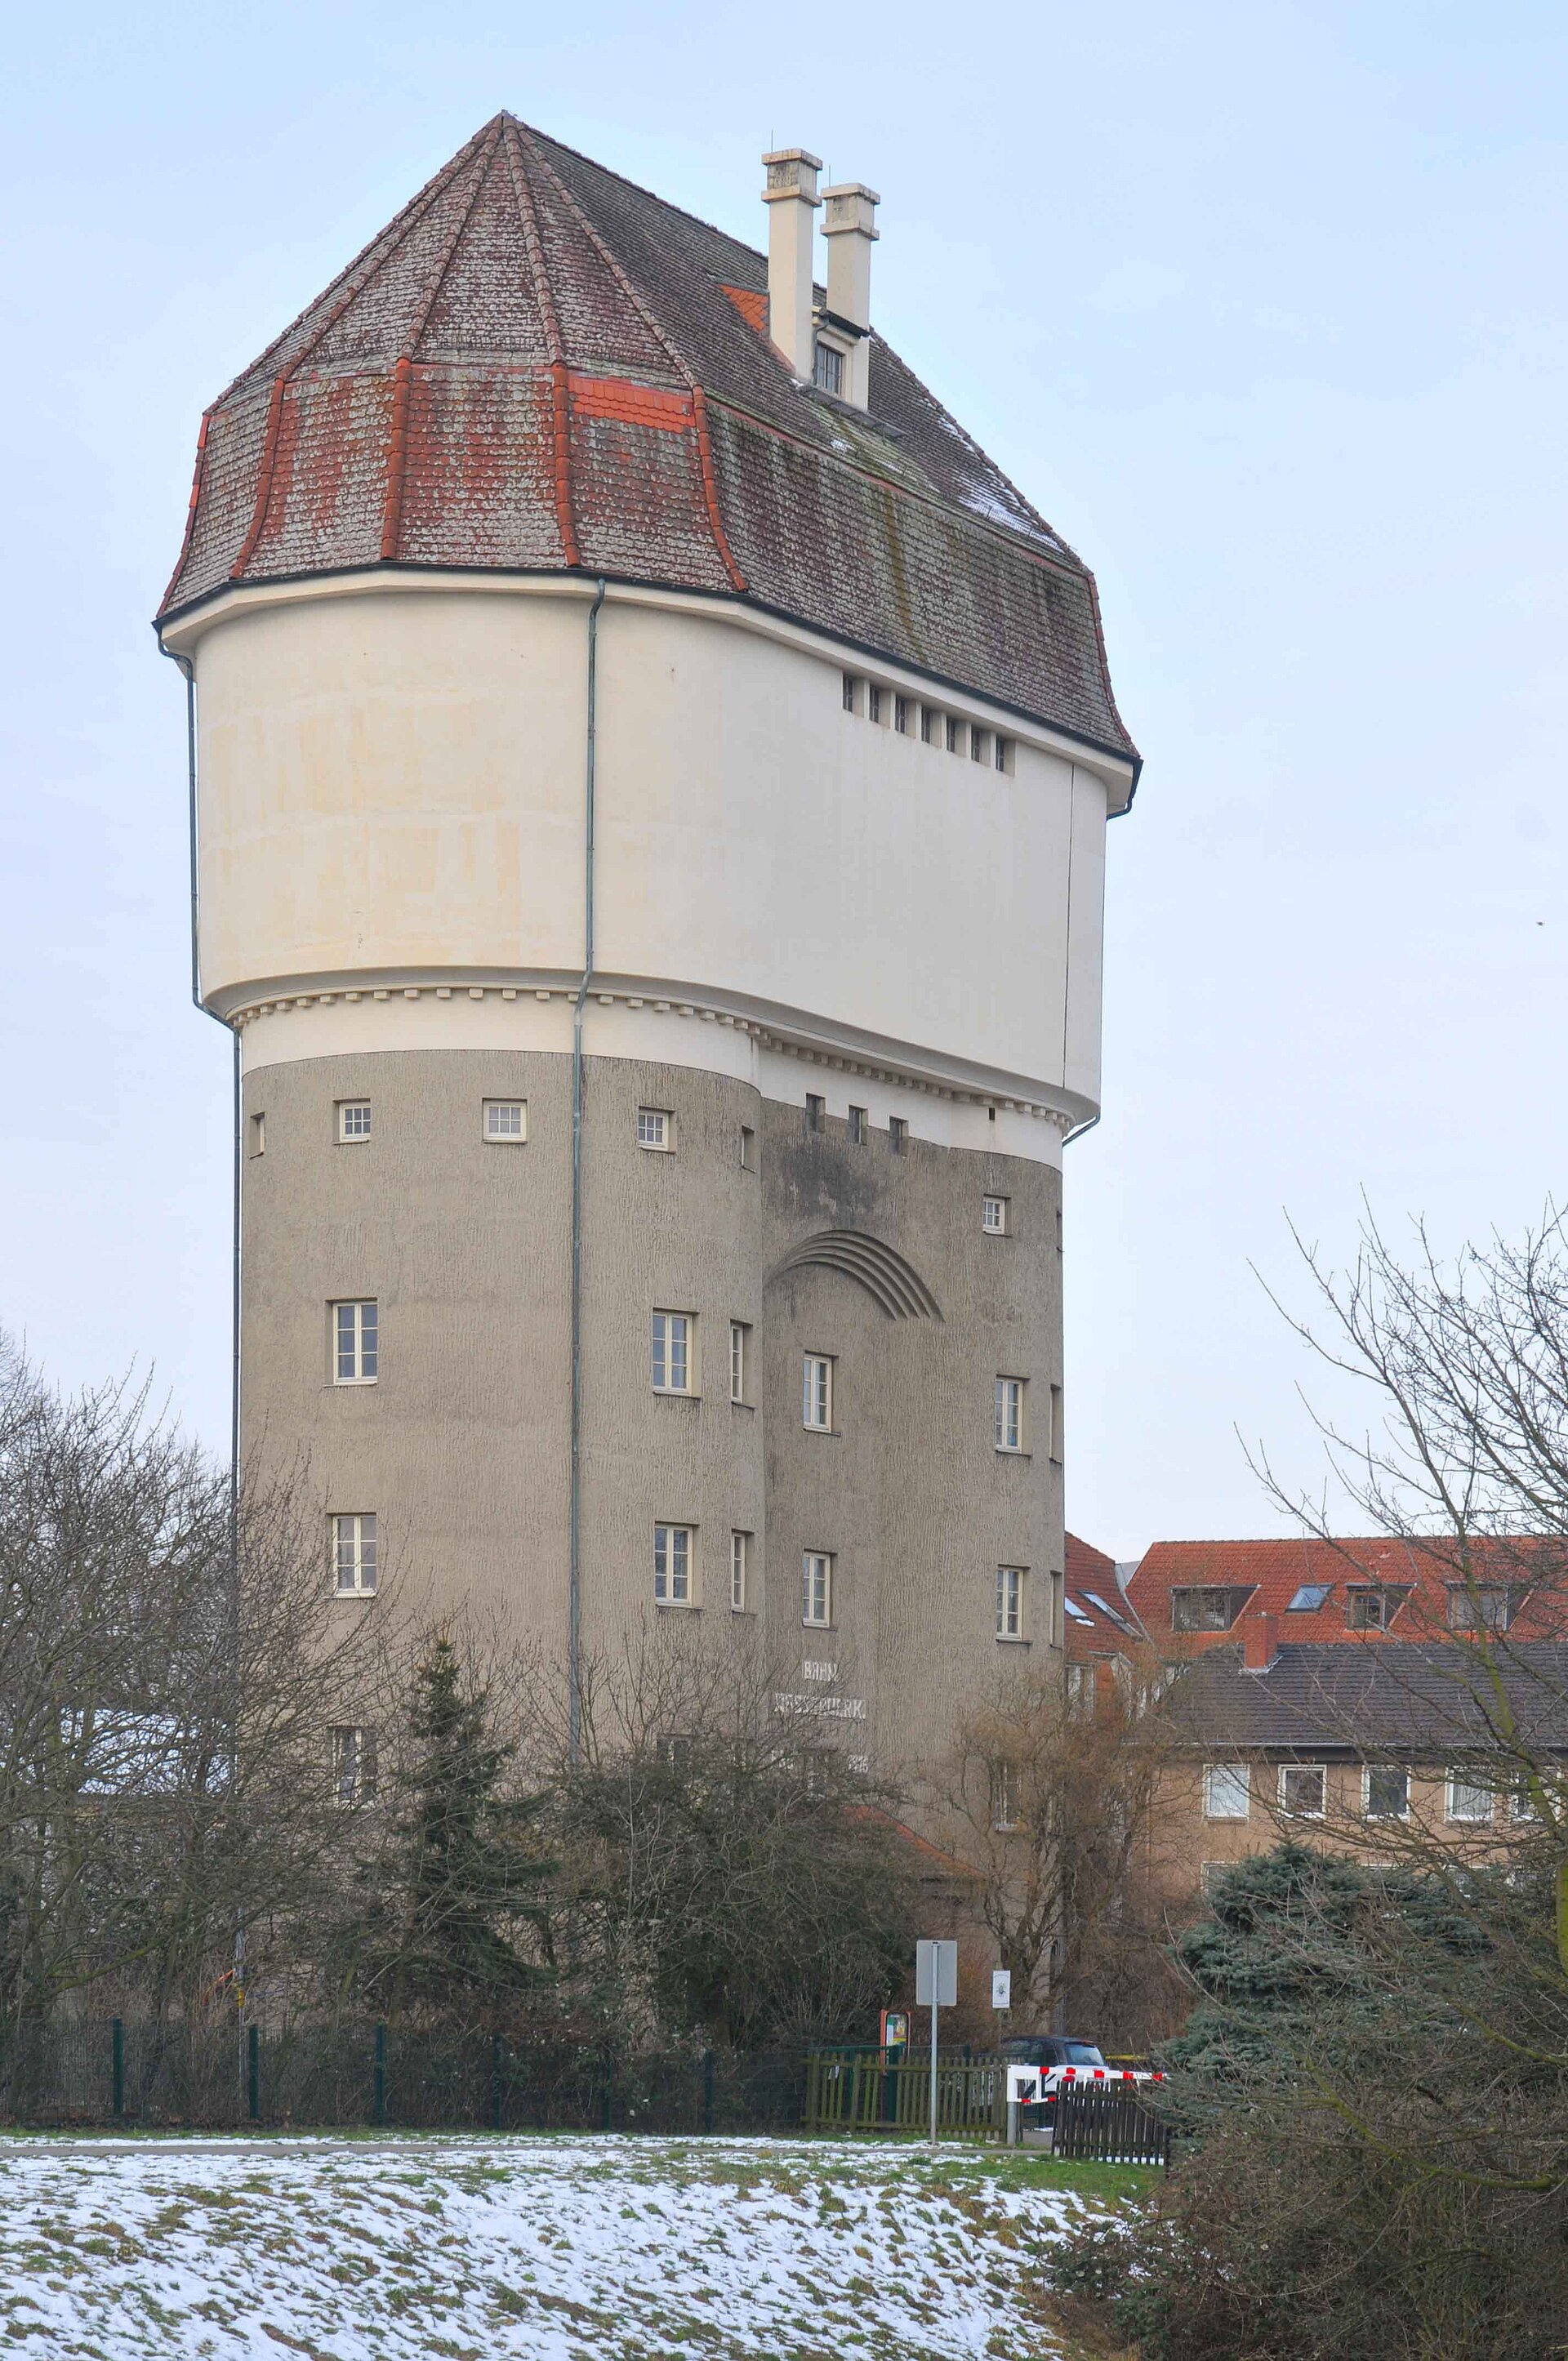 Wasserturm Rheinhausen-Friemersheim in Duisburg.